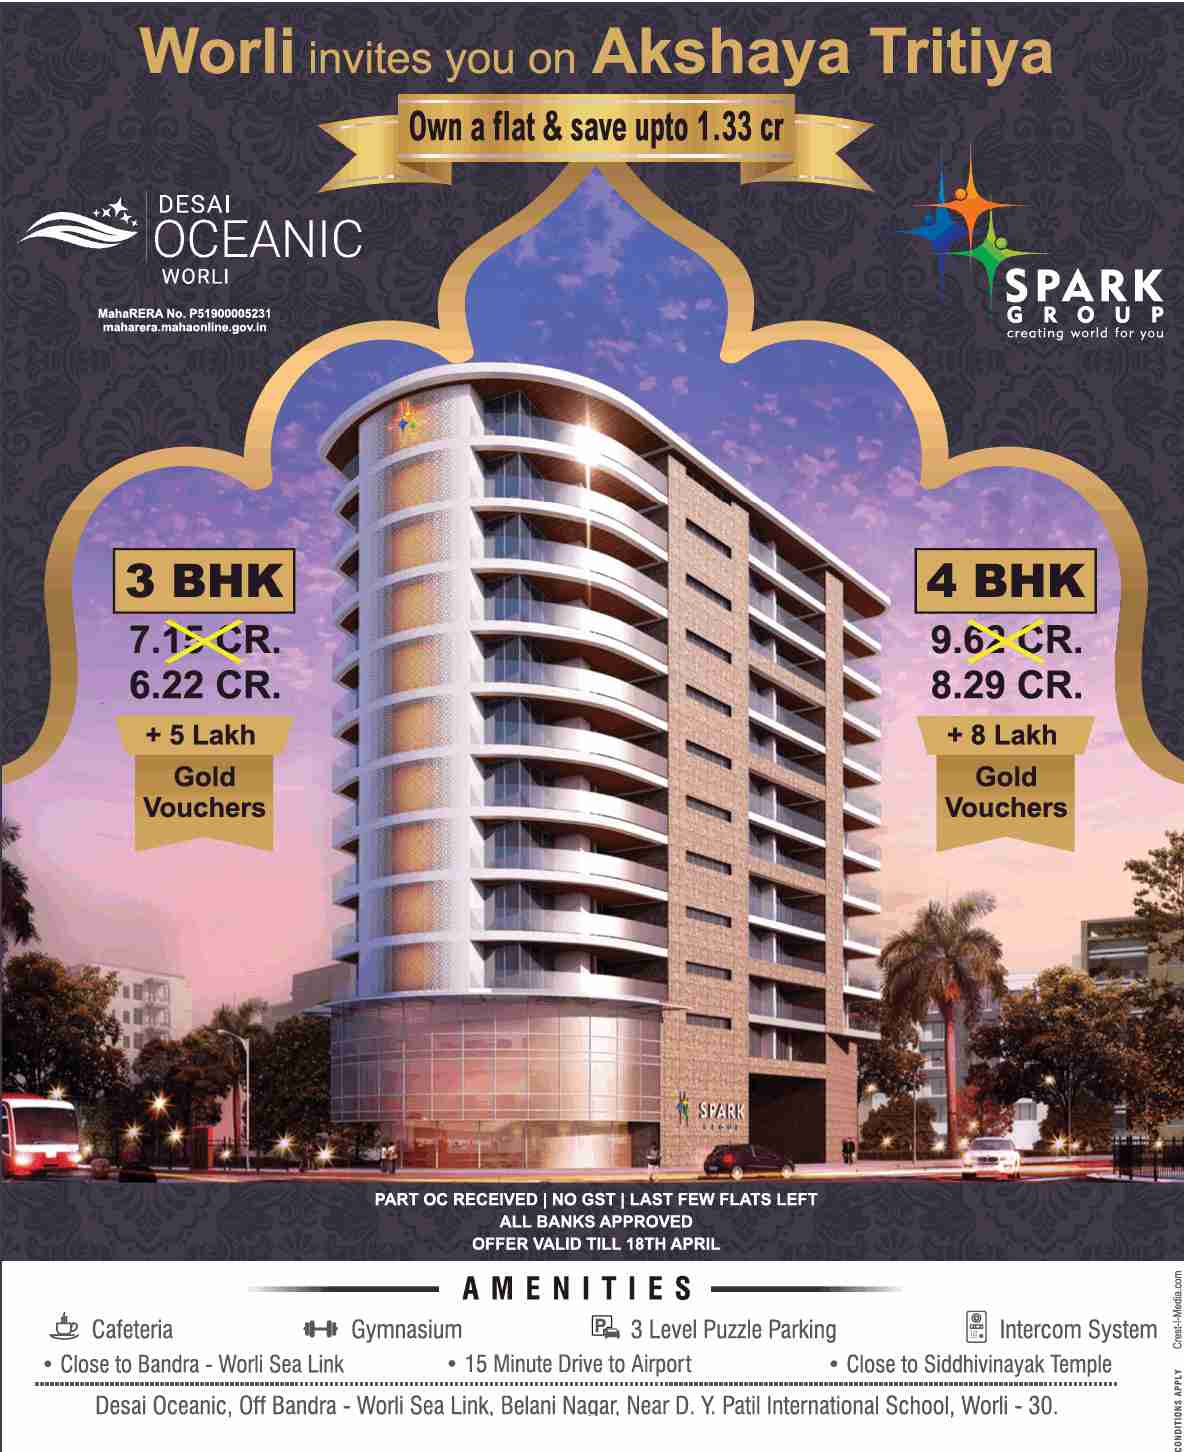 Own a flat & save up to Rs. 1.33 cr during Akshaya Tritiya Offer at Spark Desai Oceanic in Mumbai